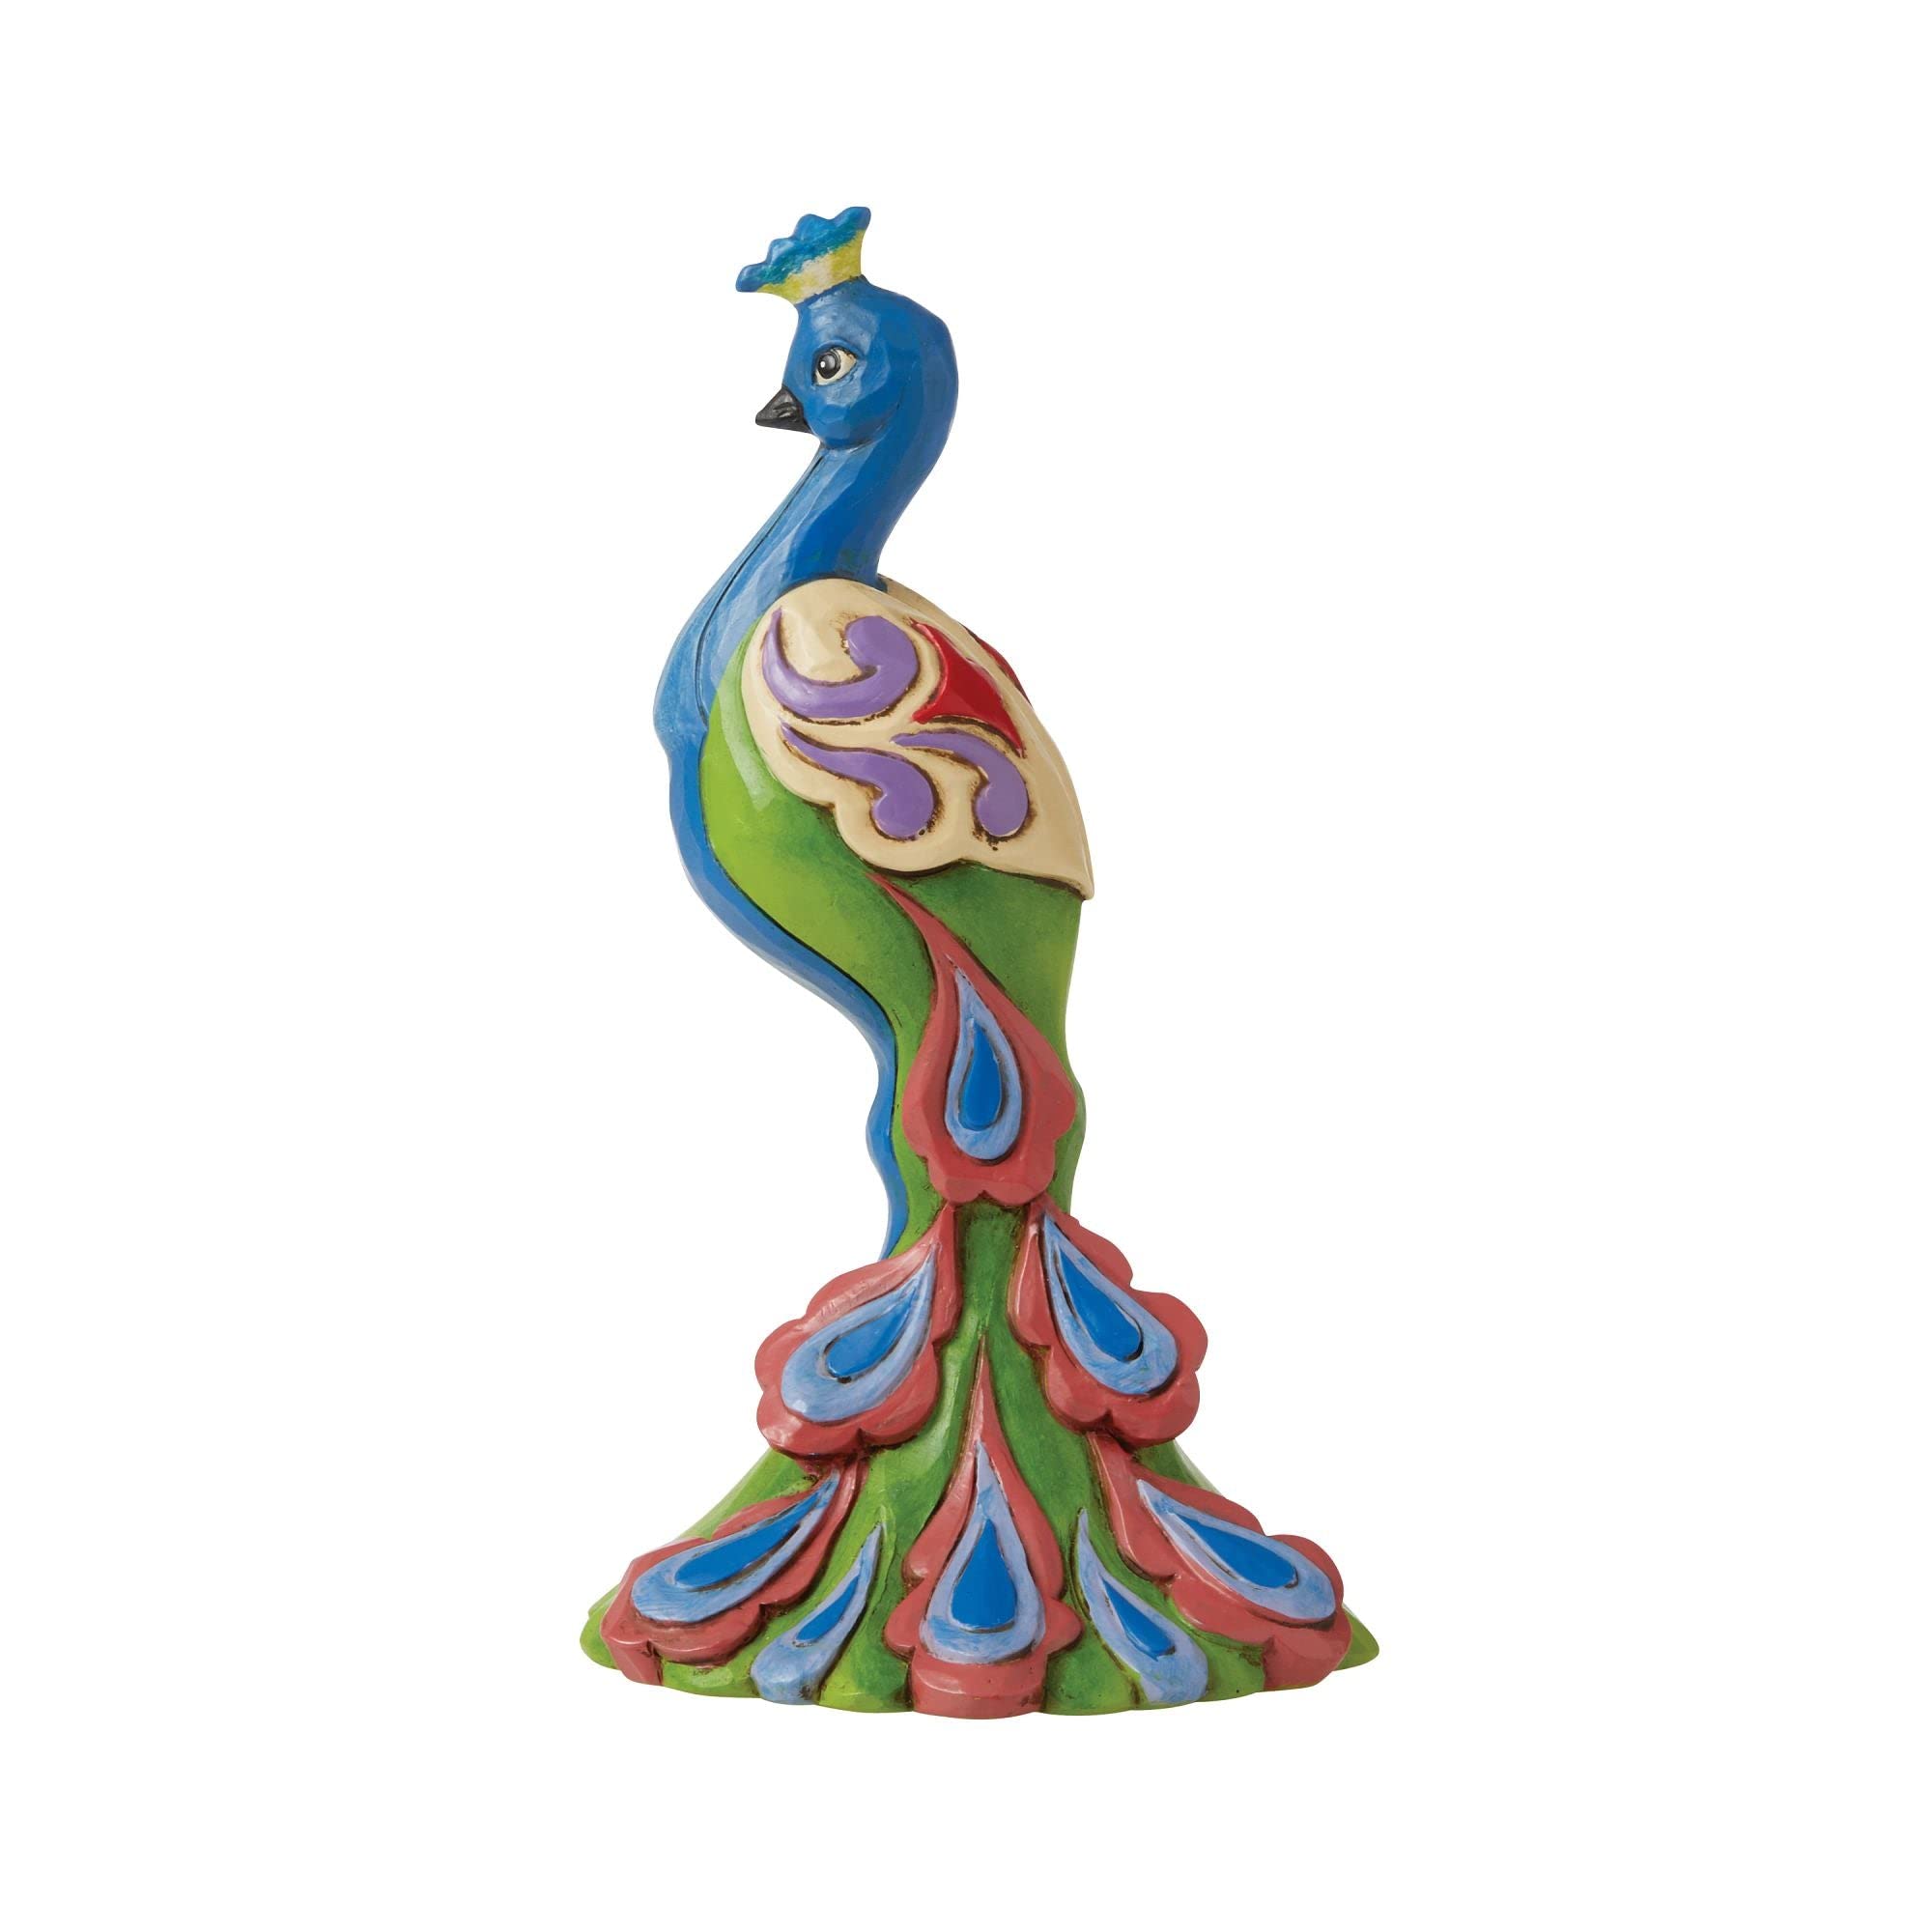 Enesco Jim Shore Mini Peacock Figurine, 5 inches